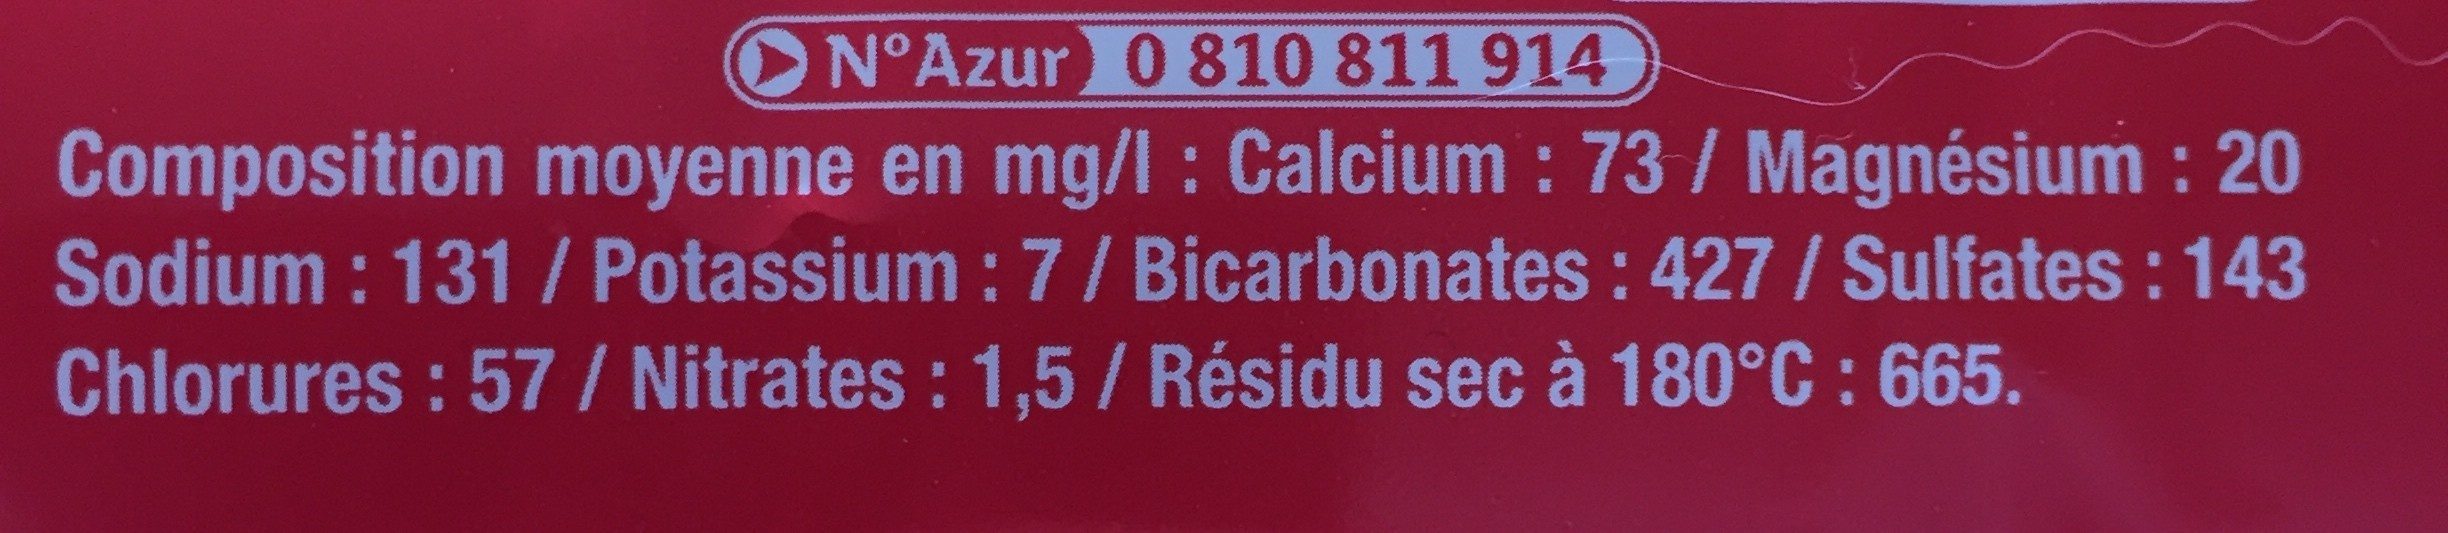 CAROLA Rouge Fortement Pétillante PET 1,25L - Ingrédients